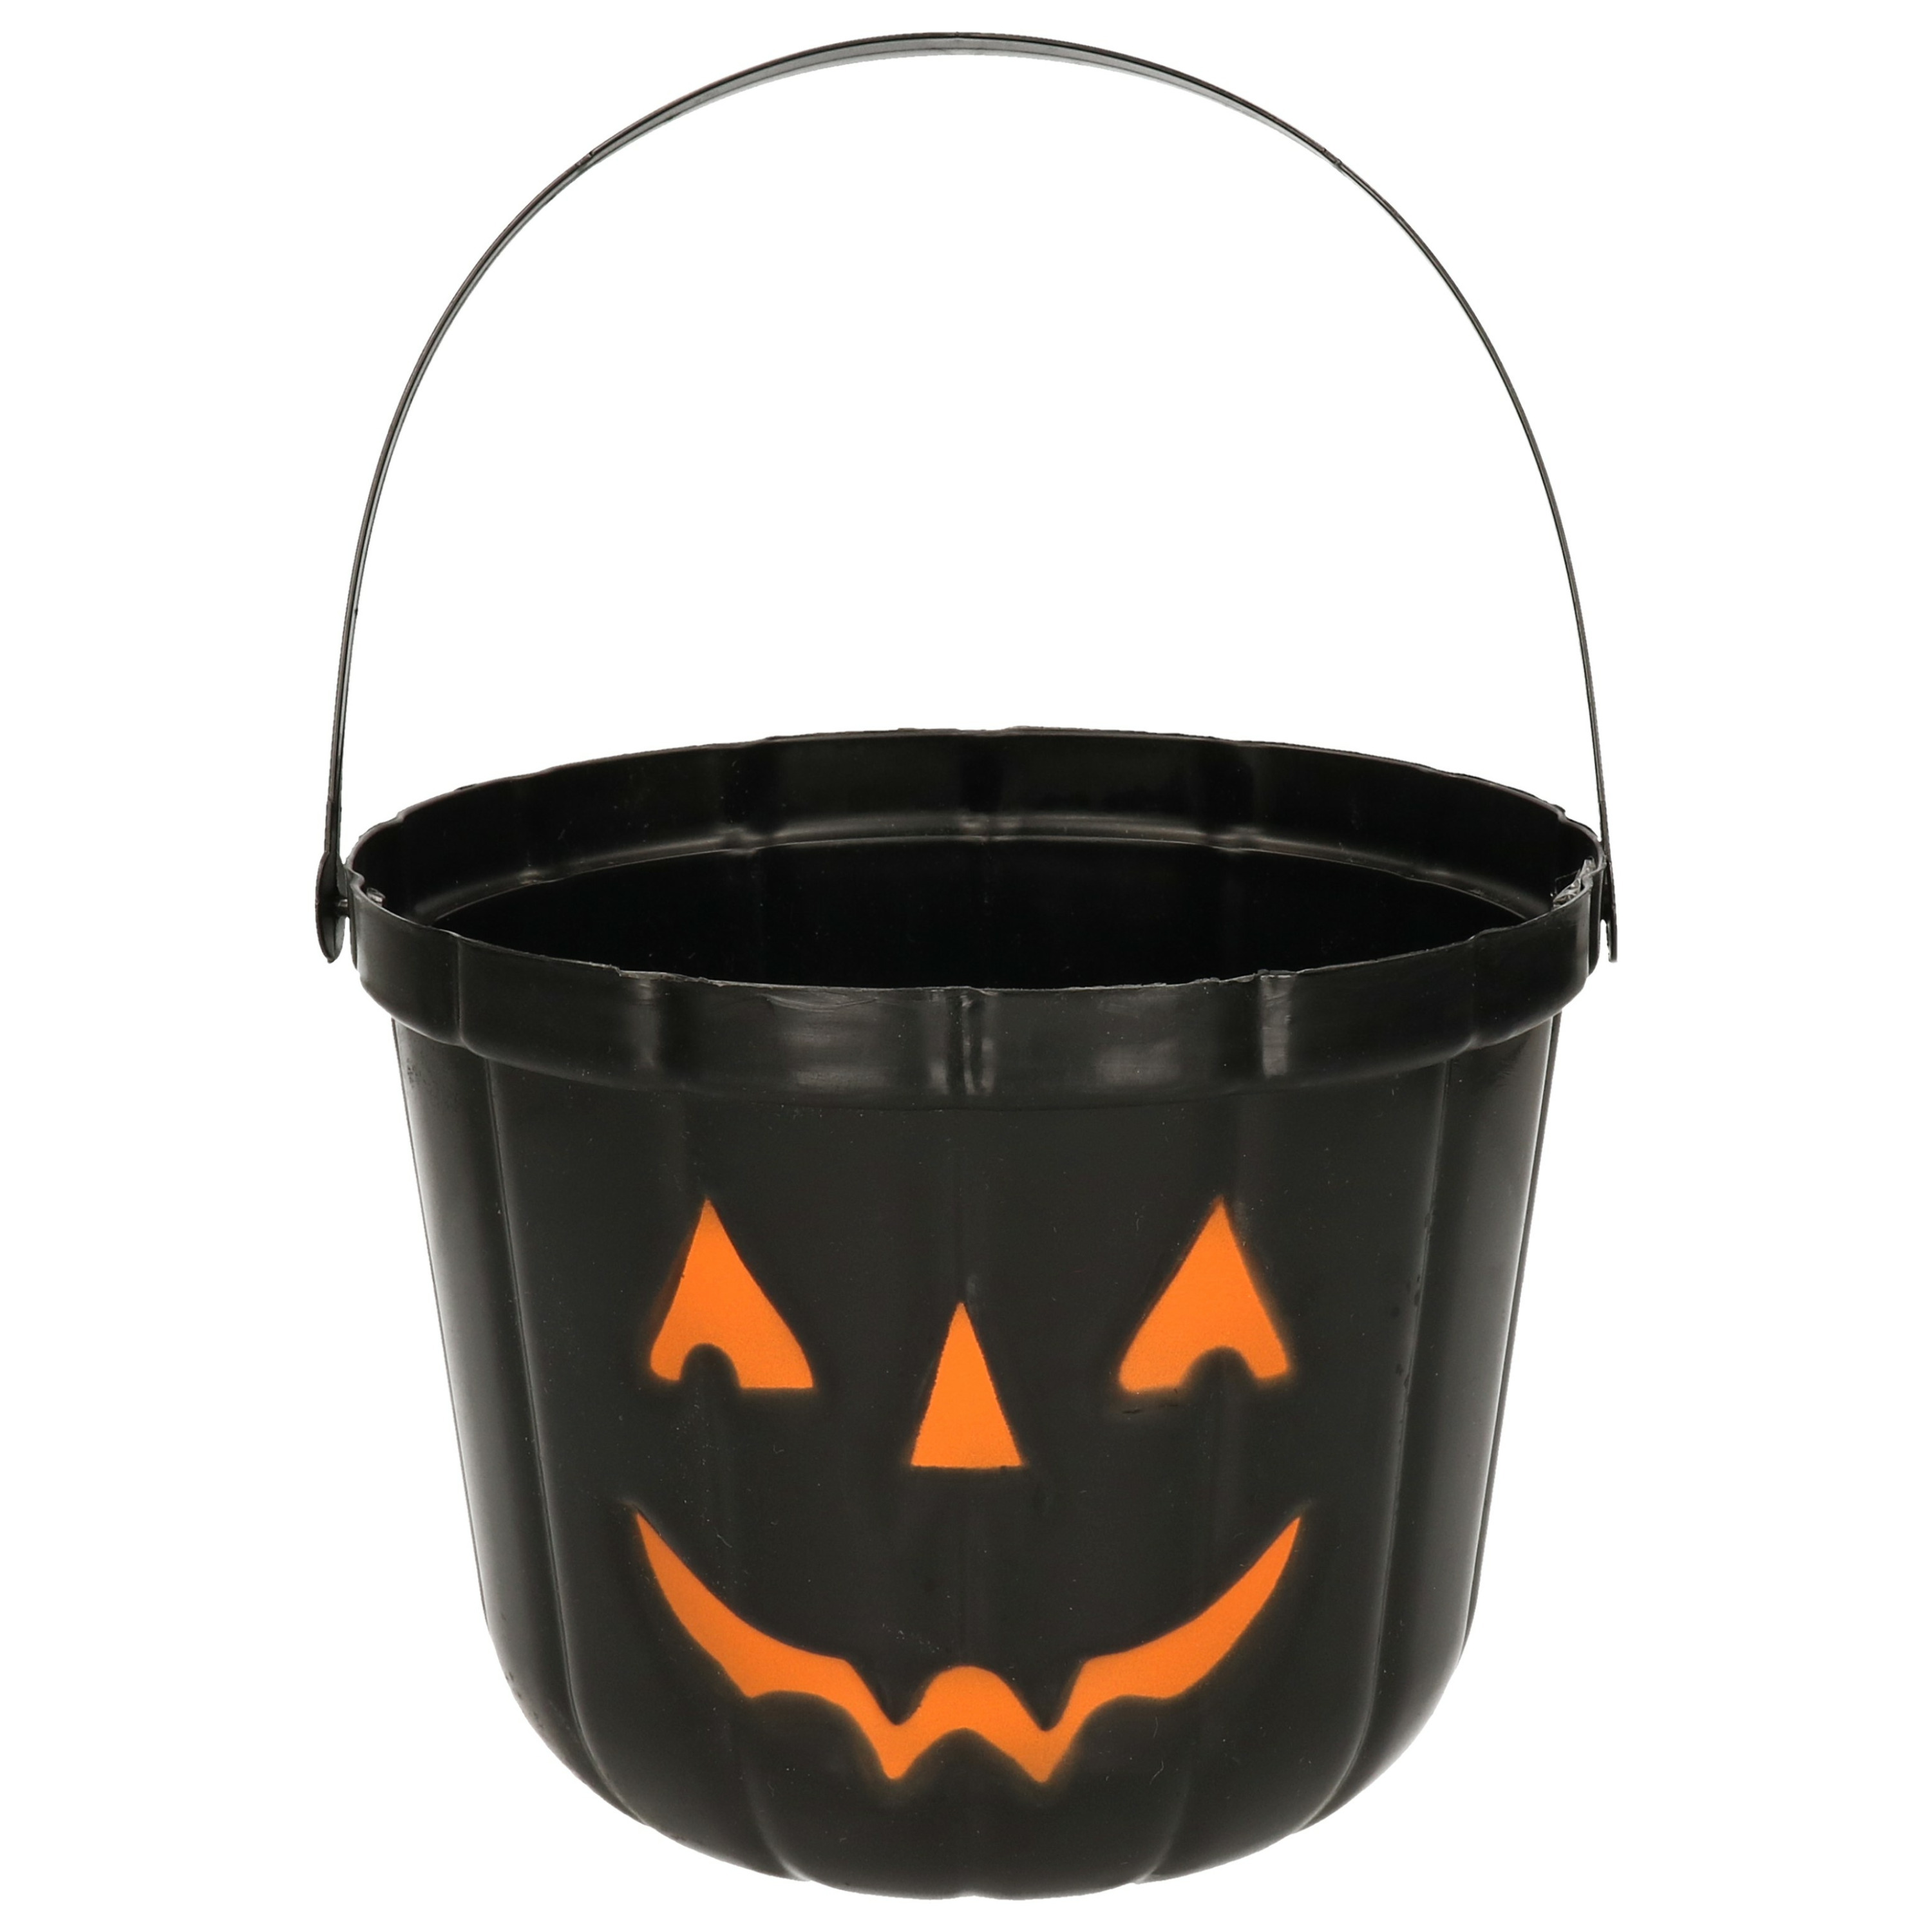 Trick or treat snoep emmertje - pompoen - zwart - D20 cm - Halloween snoepjes emmer